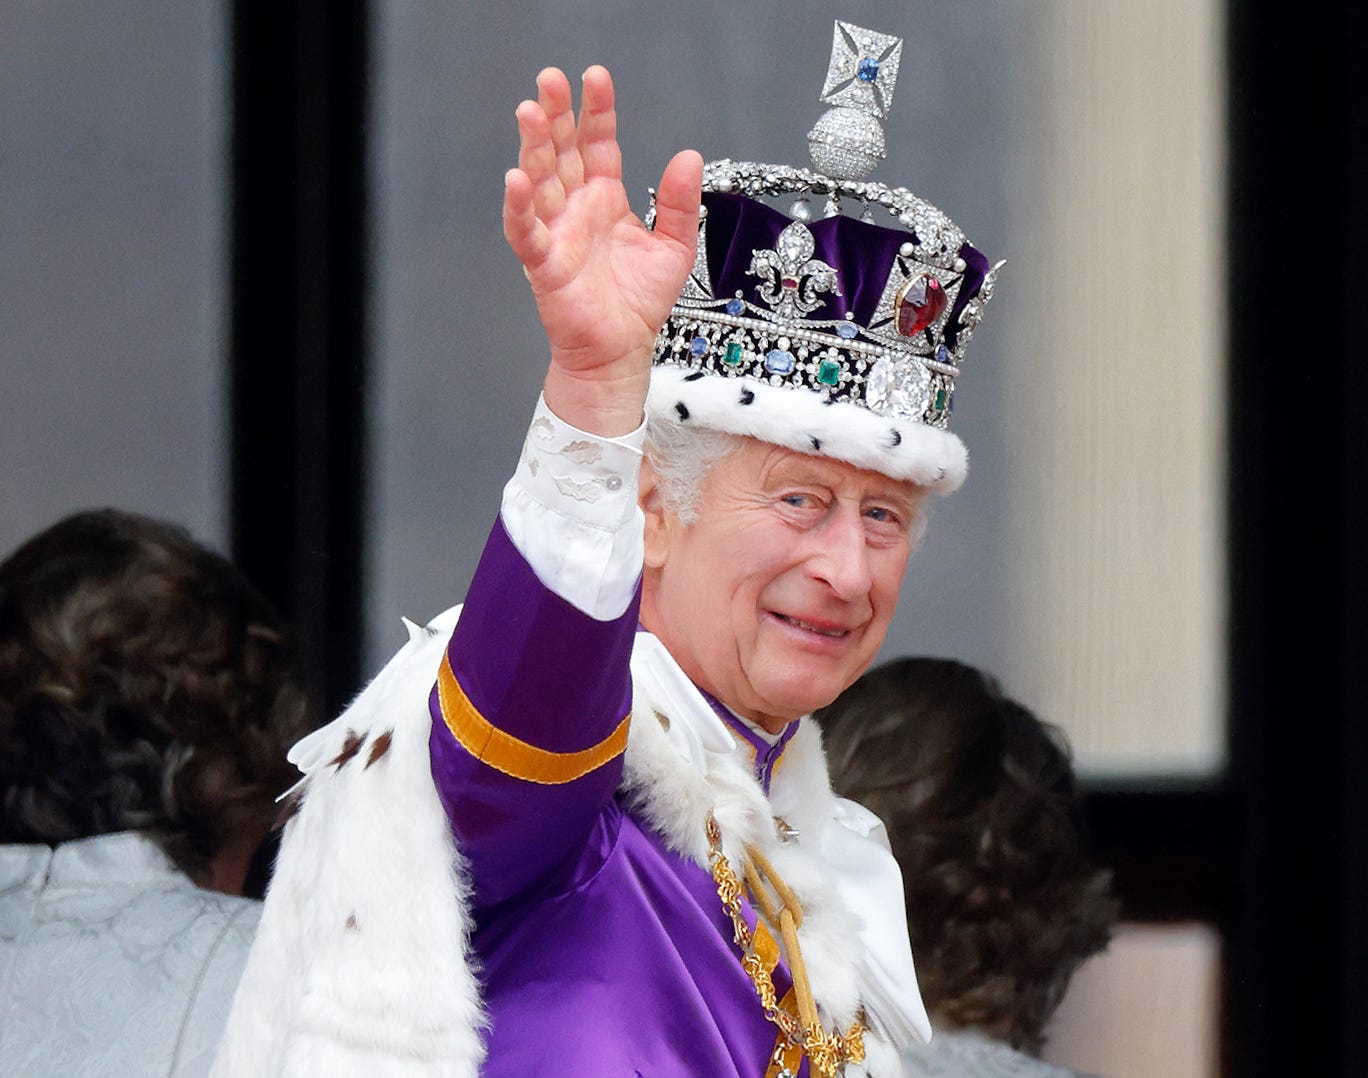 king charles wearing crown waves at his coronation